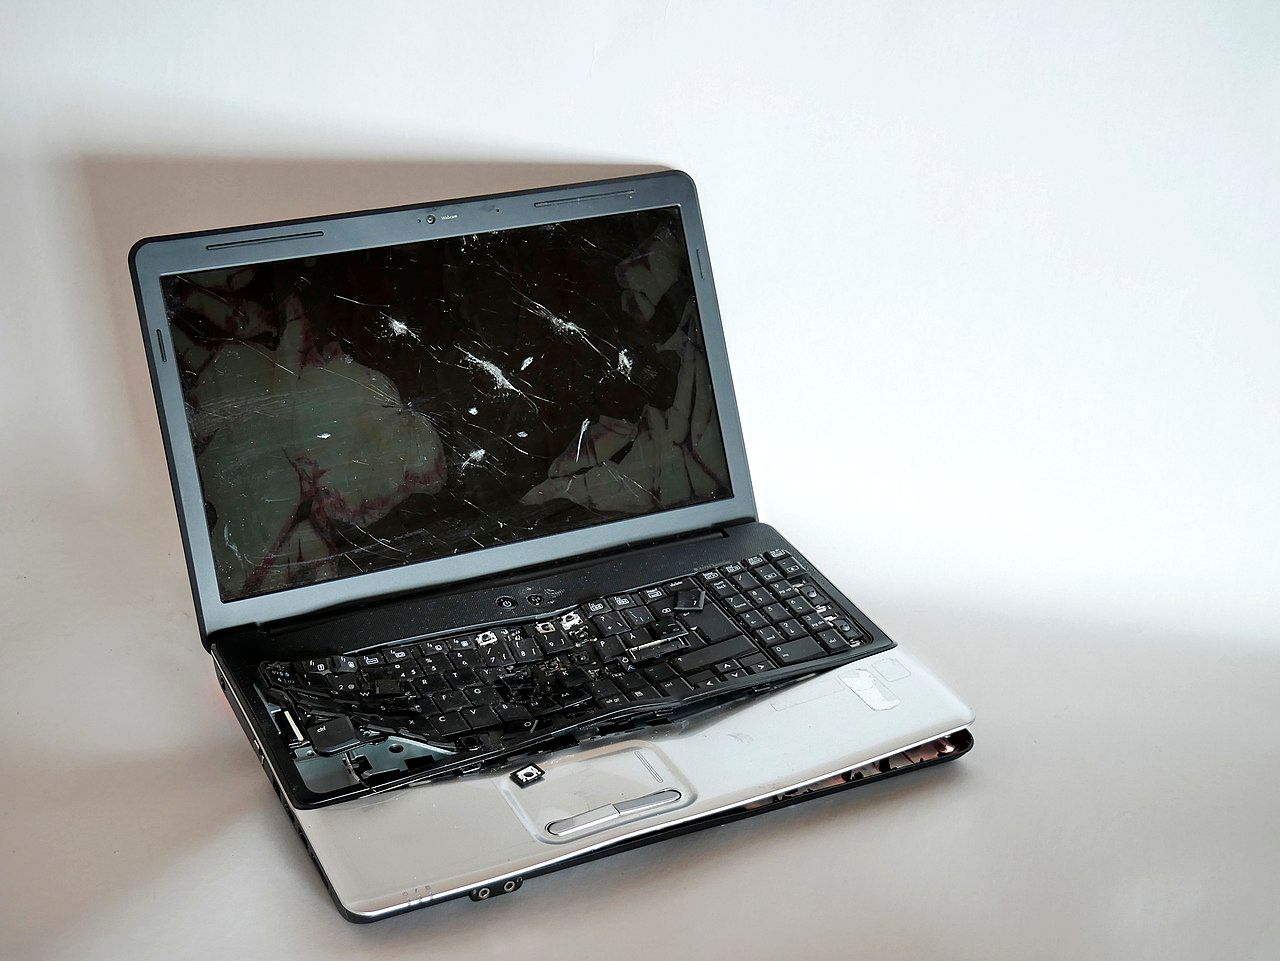 Broken laptop